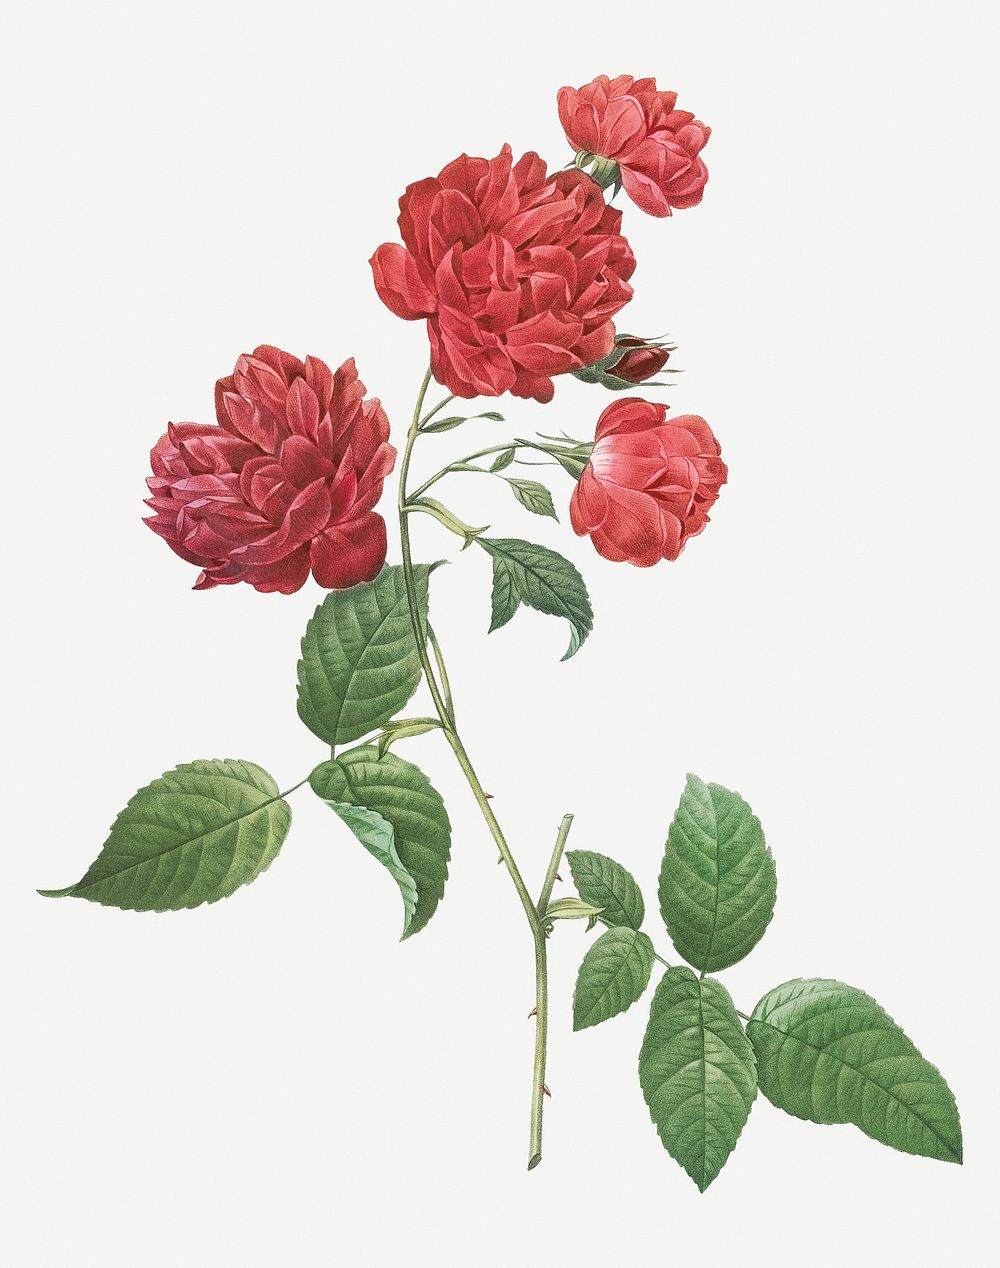 Vintage red cabbage rose illustration